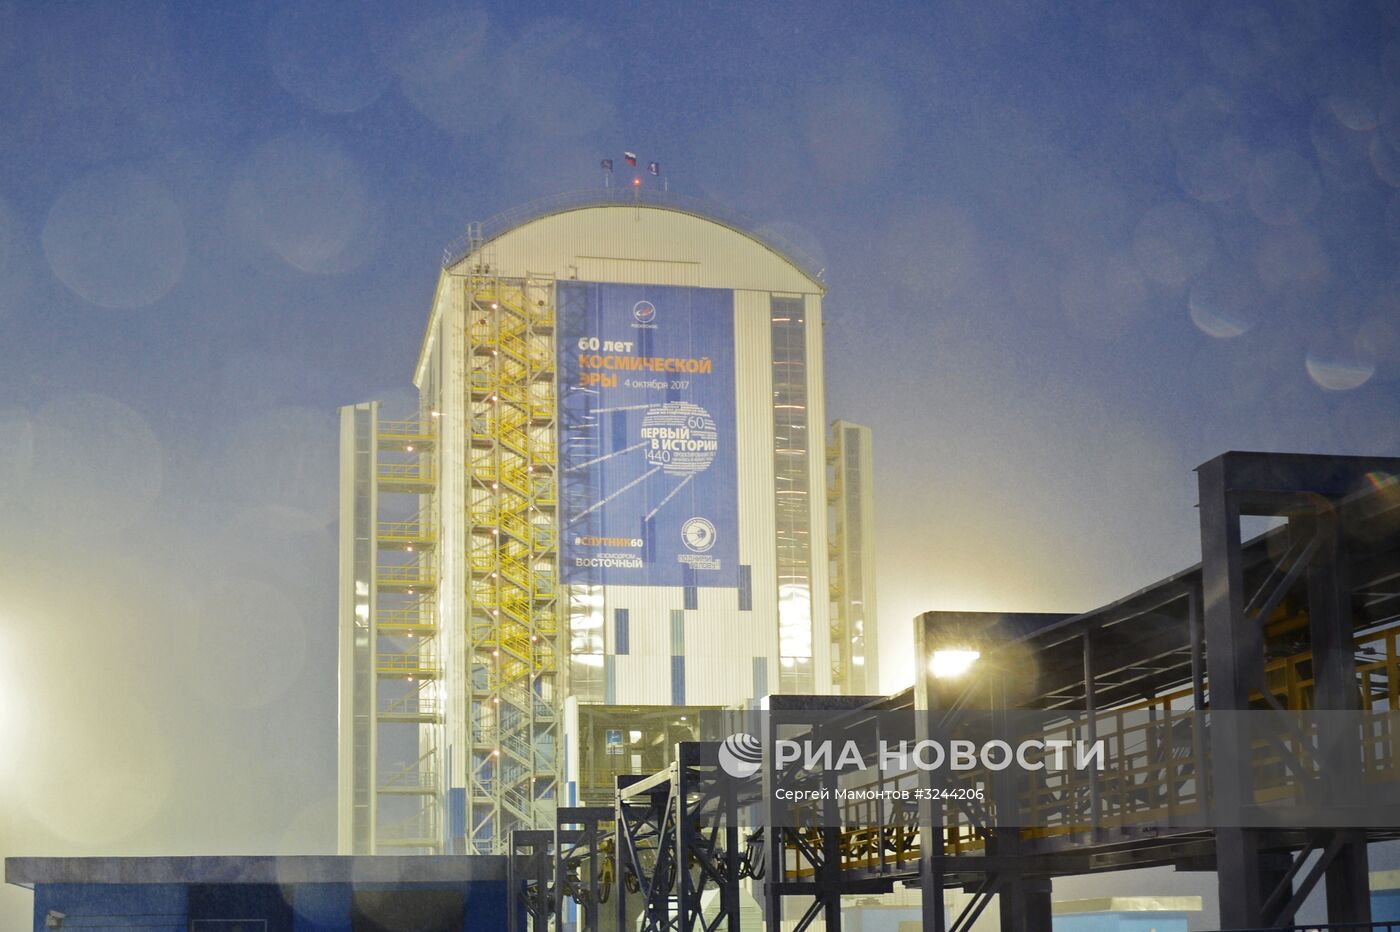 Подготовка к пуску ракеты носителя "Союз-2.1б" с КА "Метеор" с космодрома Восточный